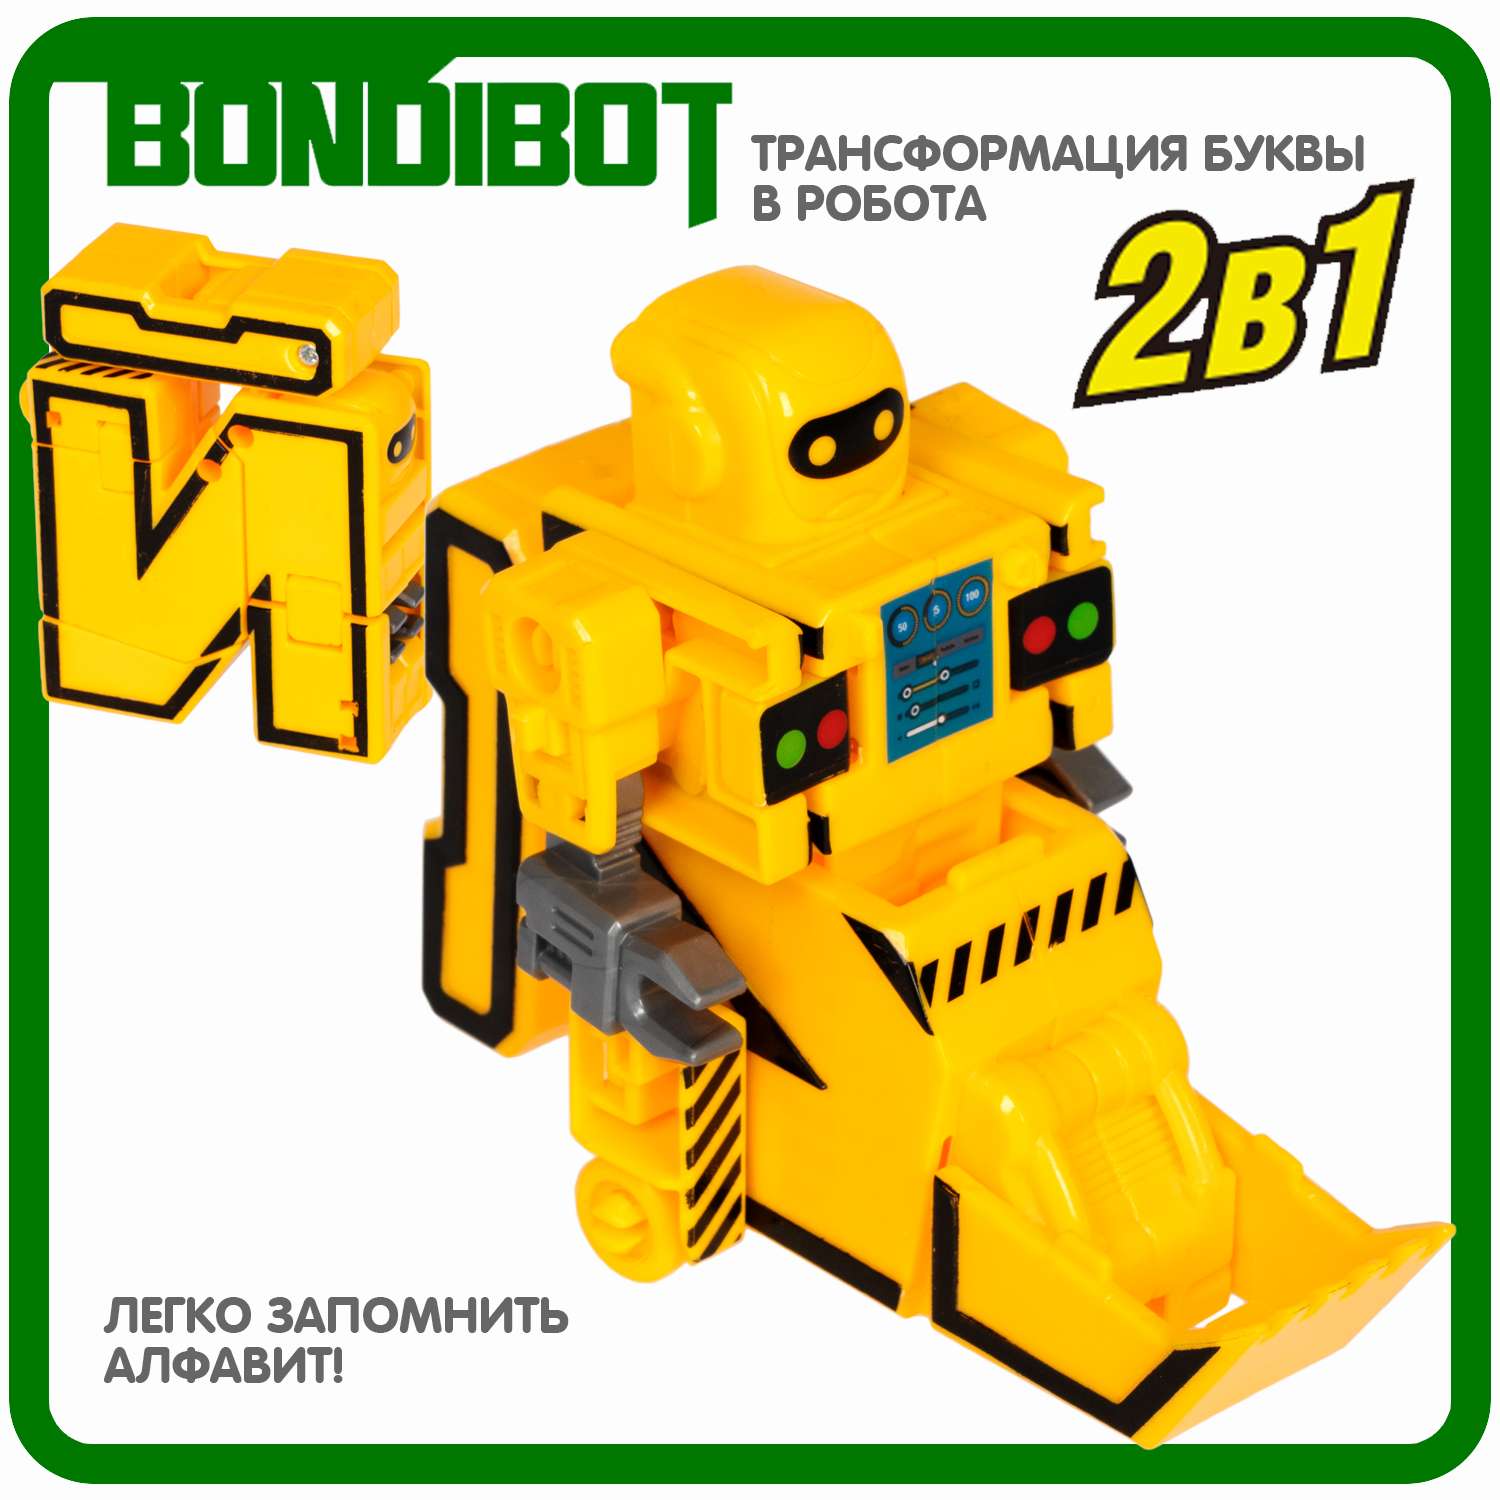 Трансформер-робот BONDIBON BONDIBOT 2 в 1 Эволюция Букв буква Й - фото 4